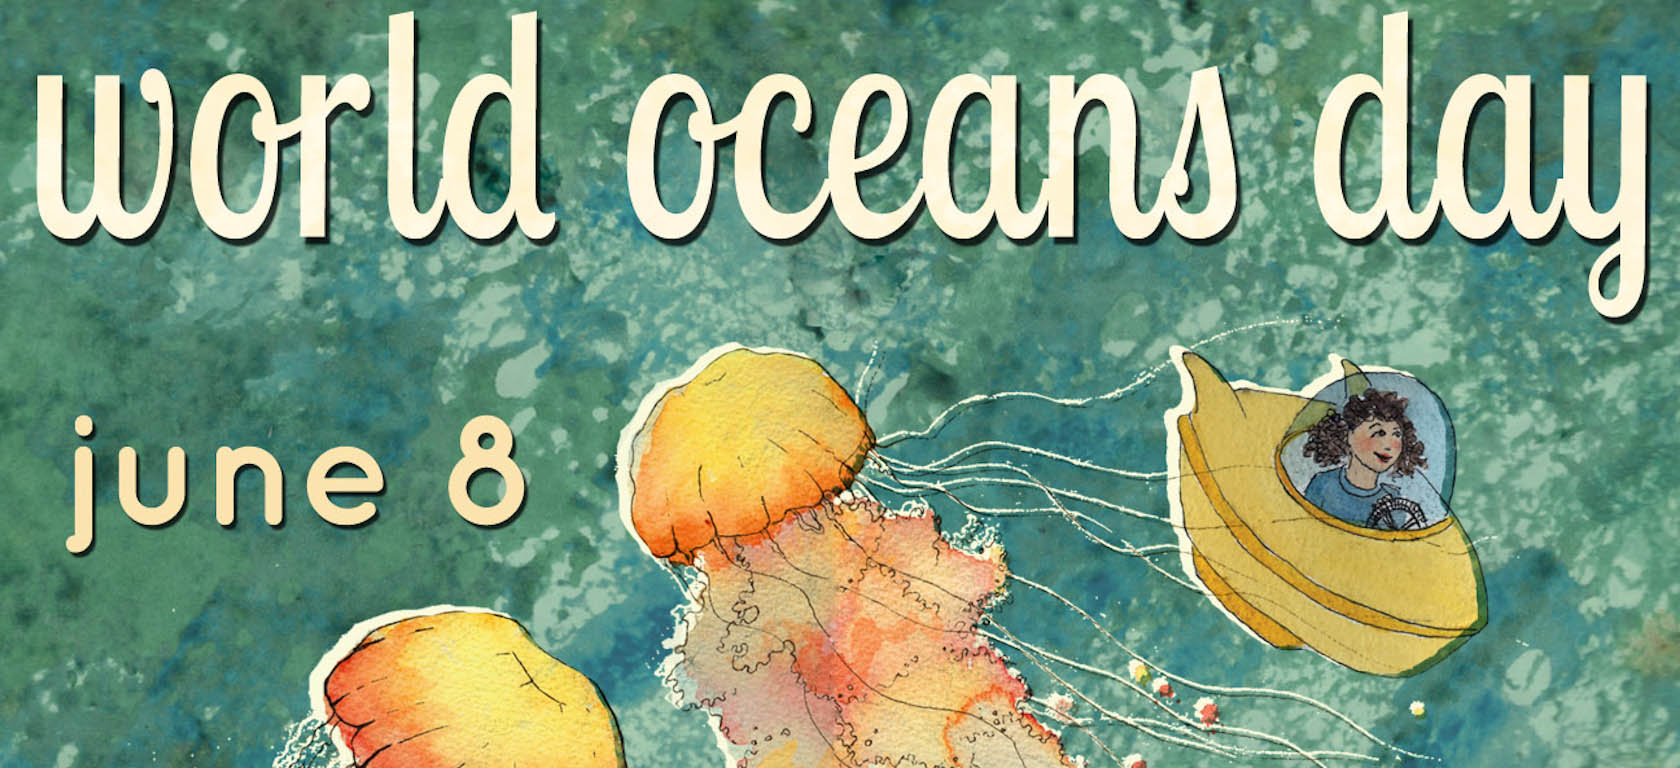 World Oceans Day June 8 2016